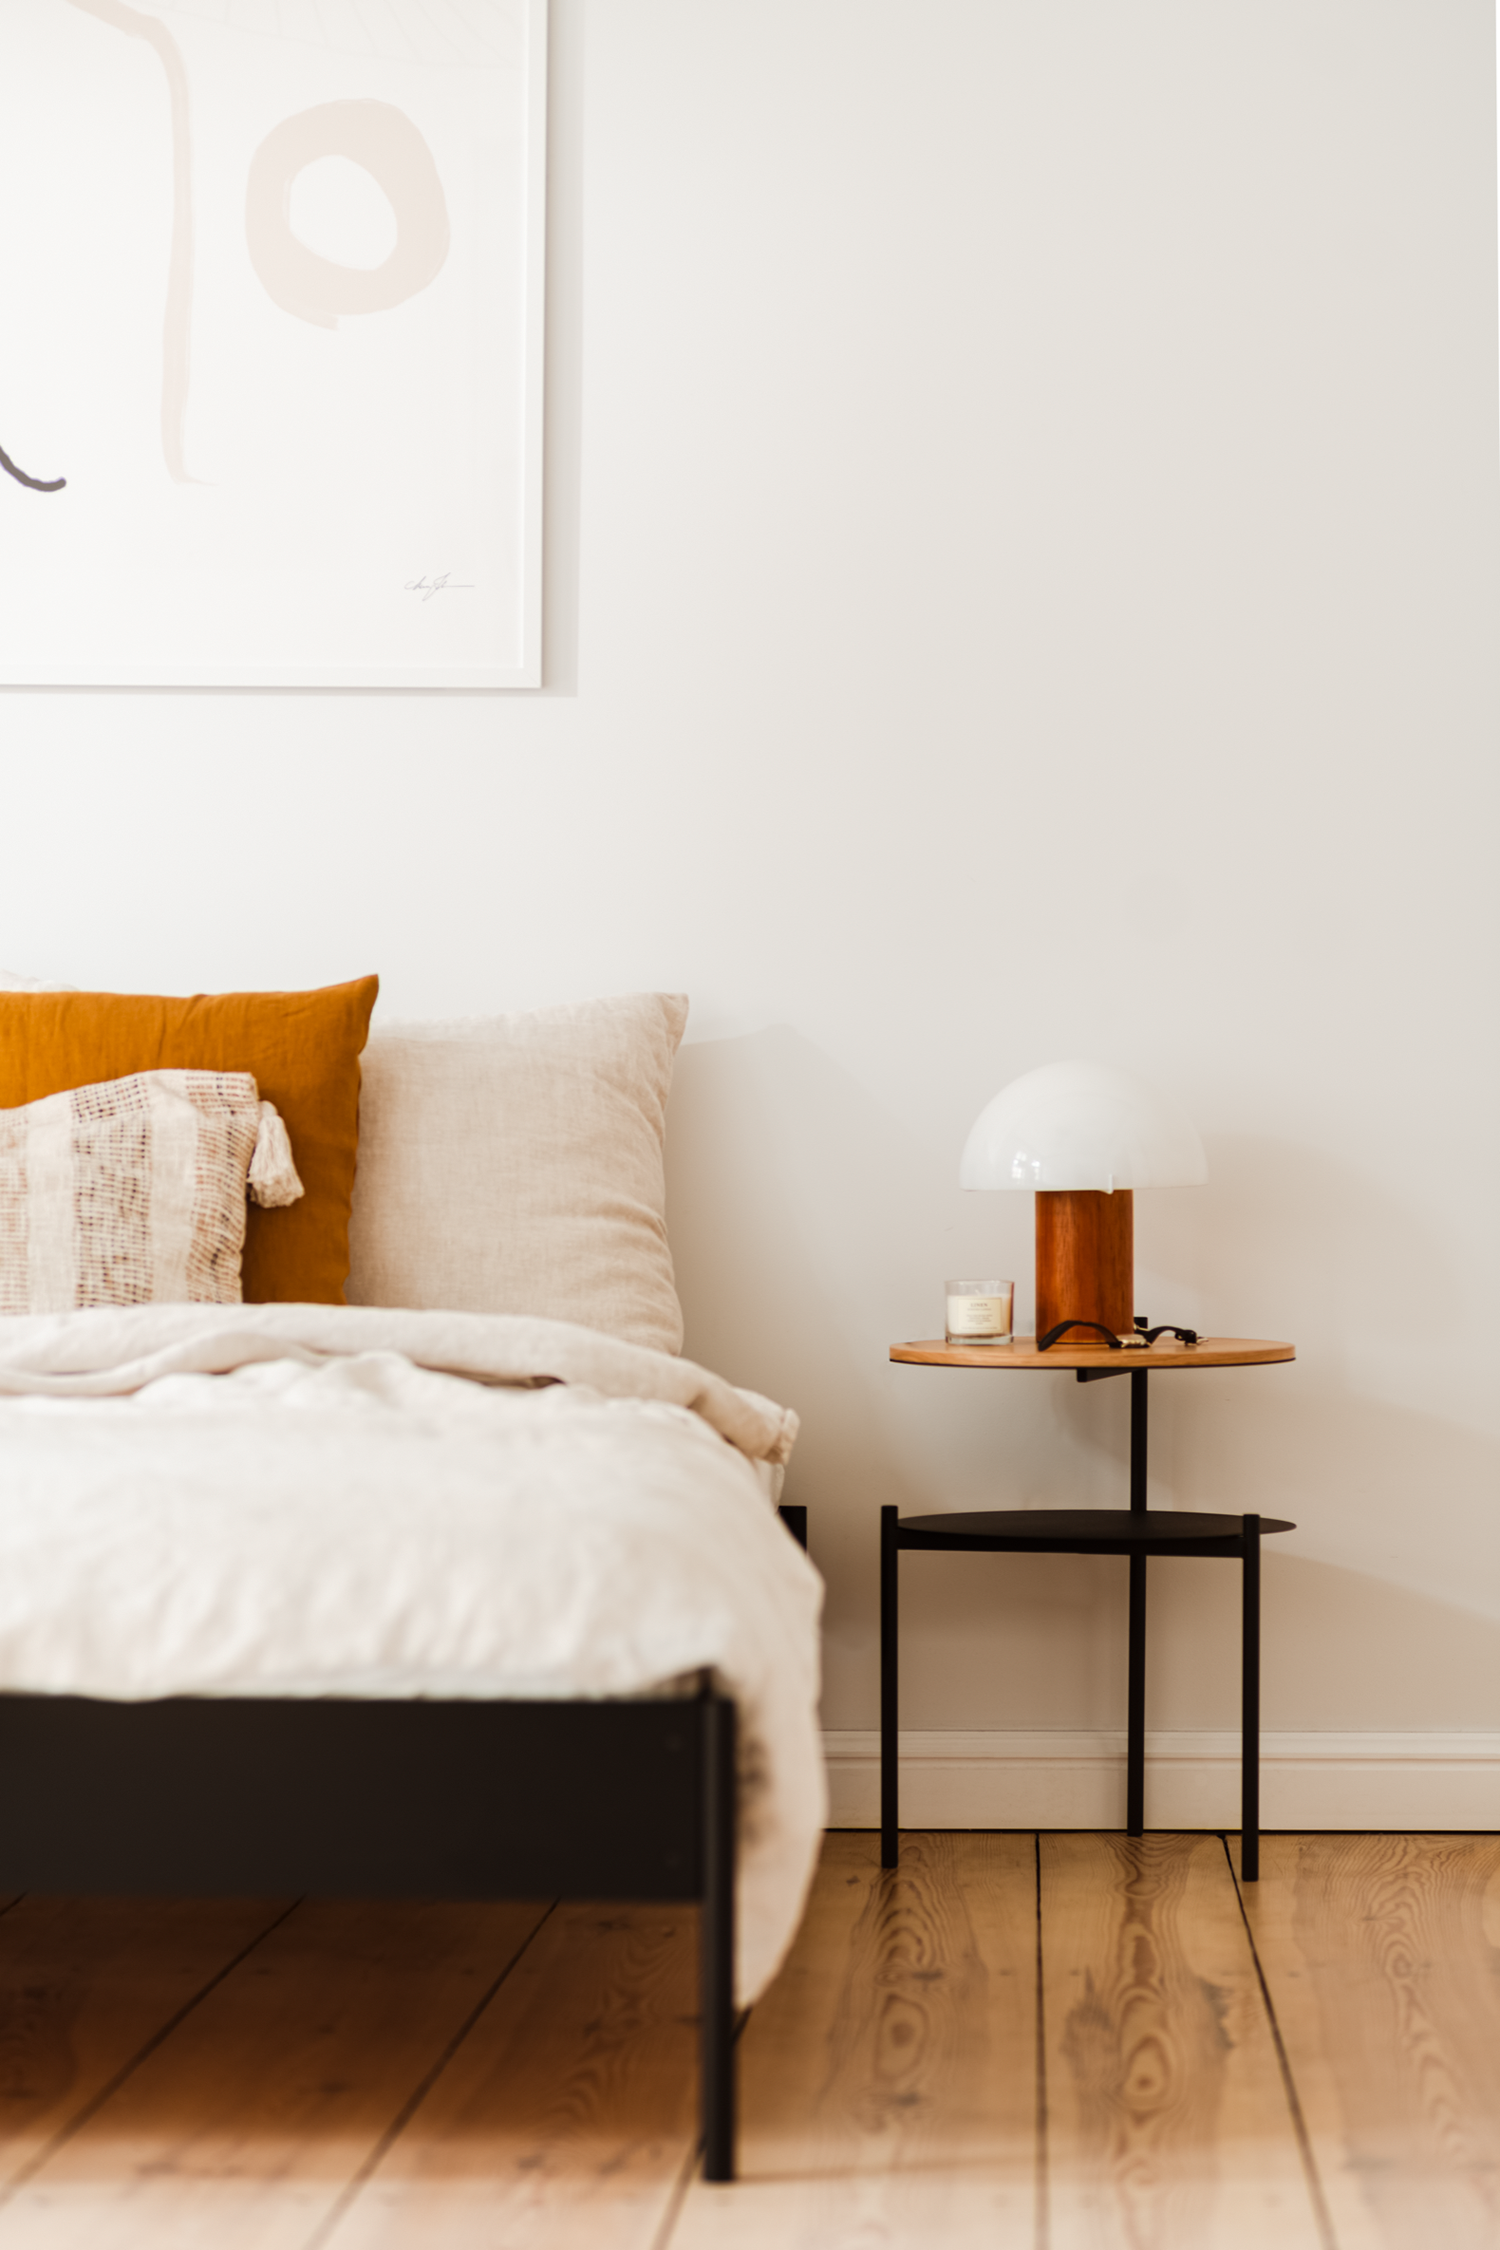 Eton Bett Basic mit Lattenrost in Schwarz präsentiert im Onlineshop von KAQTU Design AG. Bett ist von Noo.ma